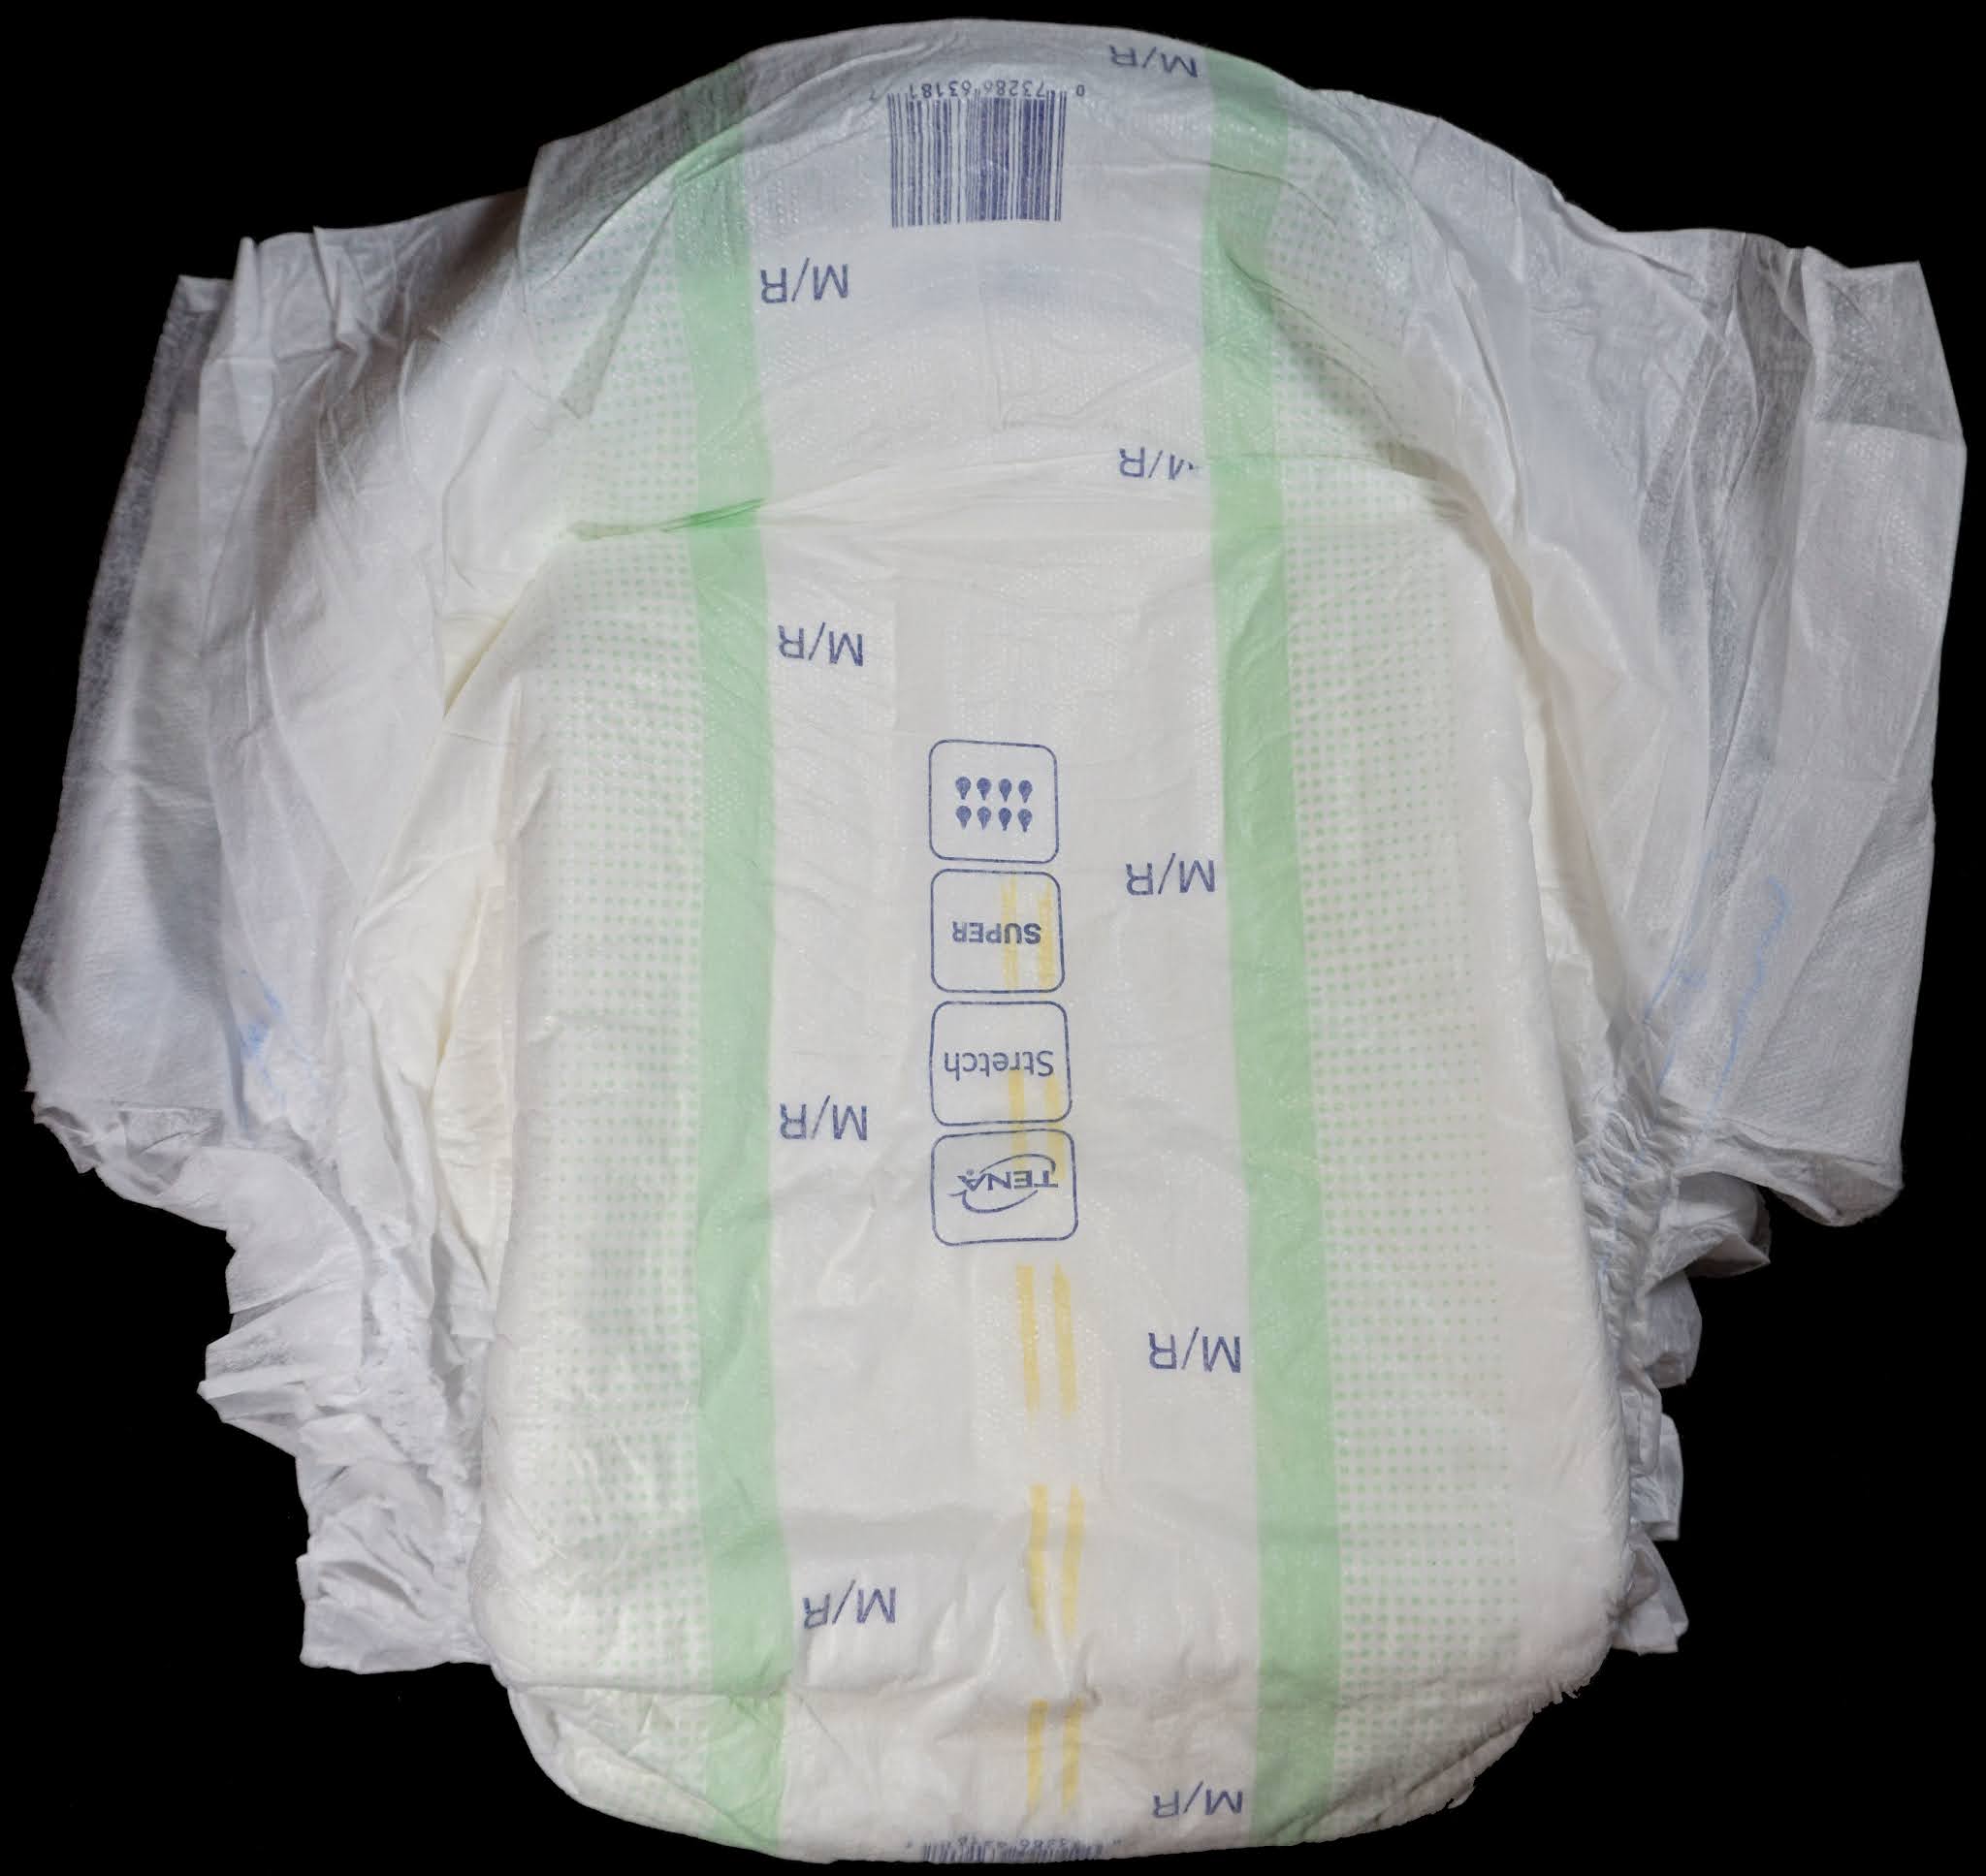 Diaper Metrics: Tena Super Stretch Briefs Adult Diaper Review